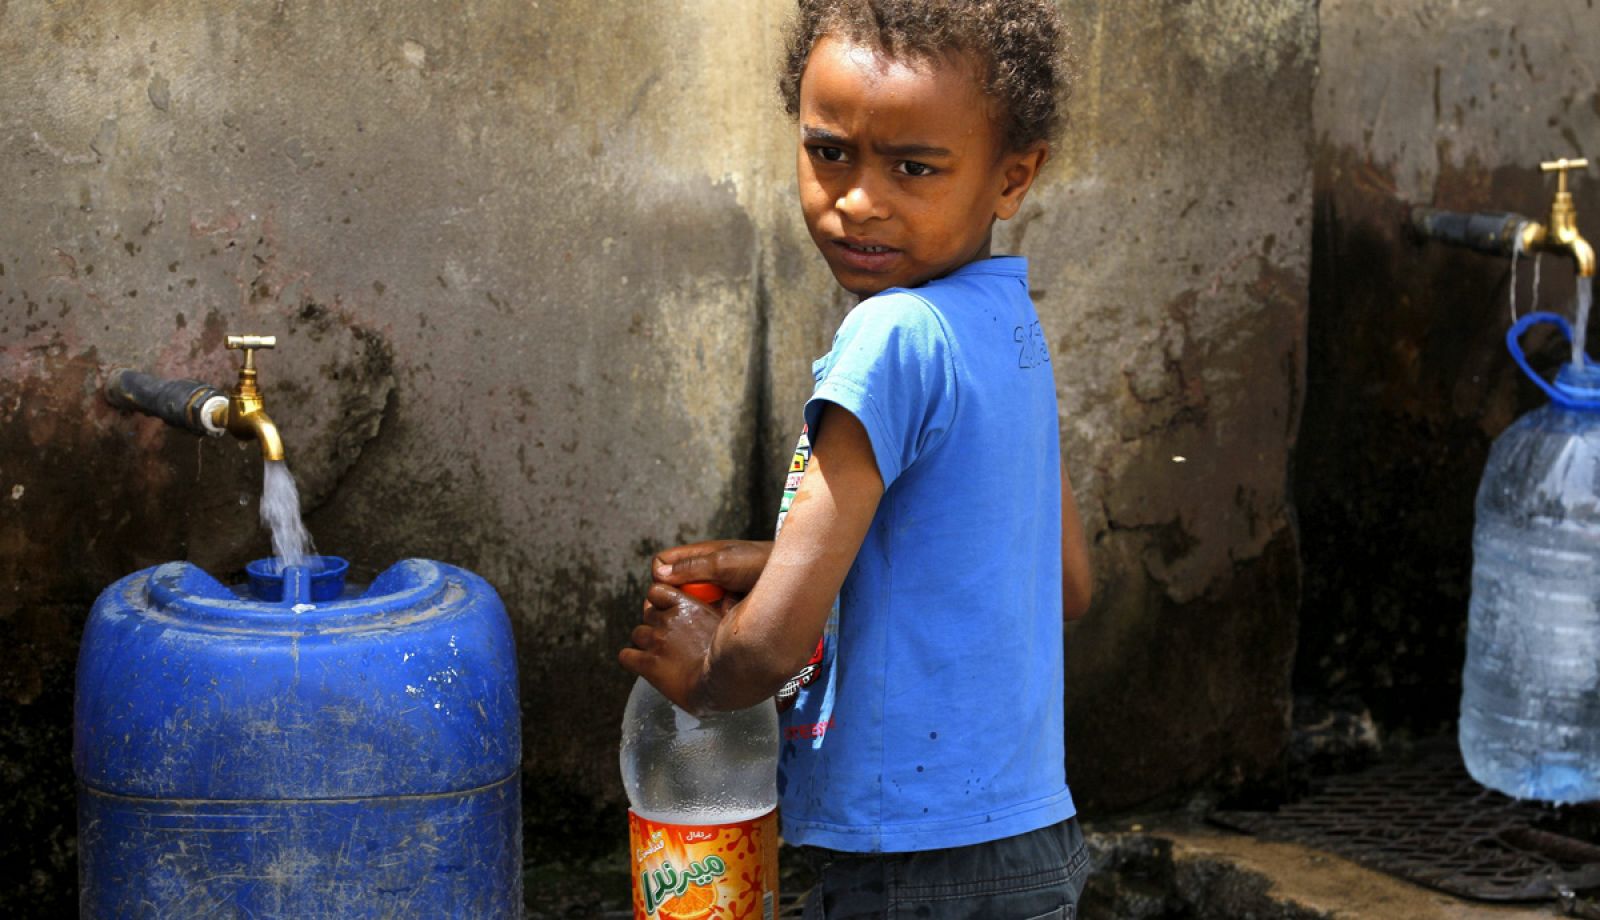 La diarrea está relacionada con la falta de agua potable y de condiciones higiénico-sanitarias.